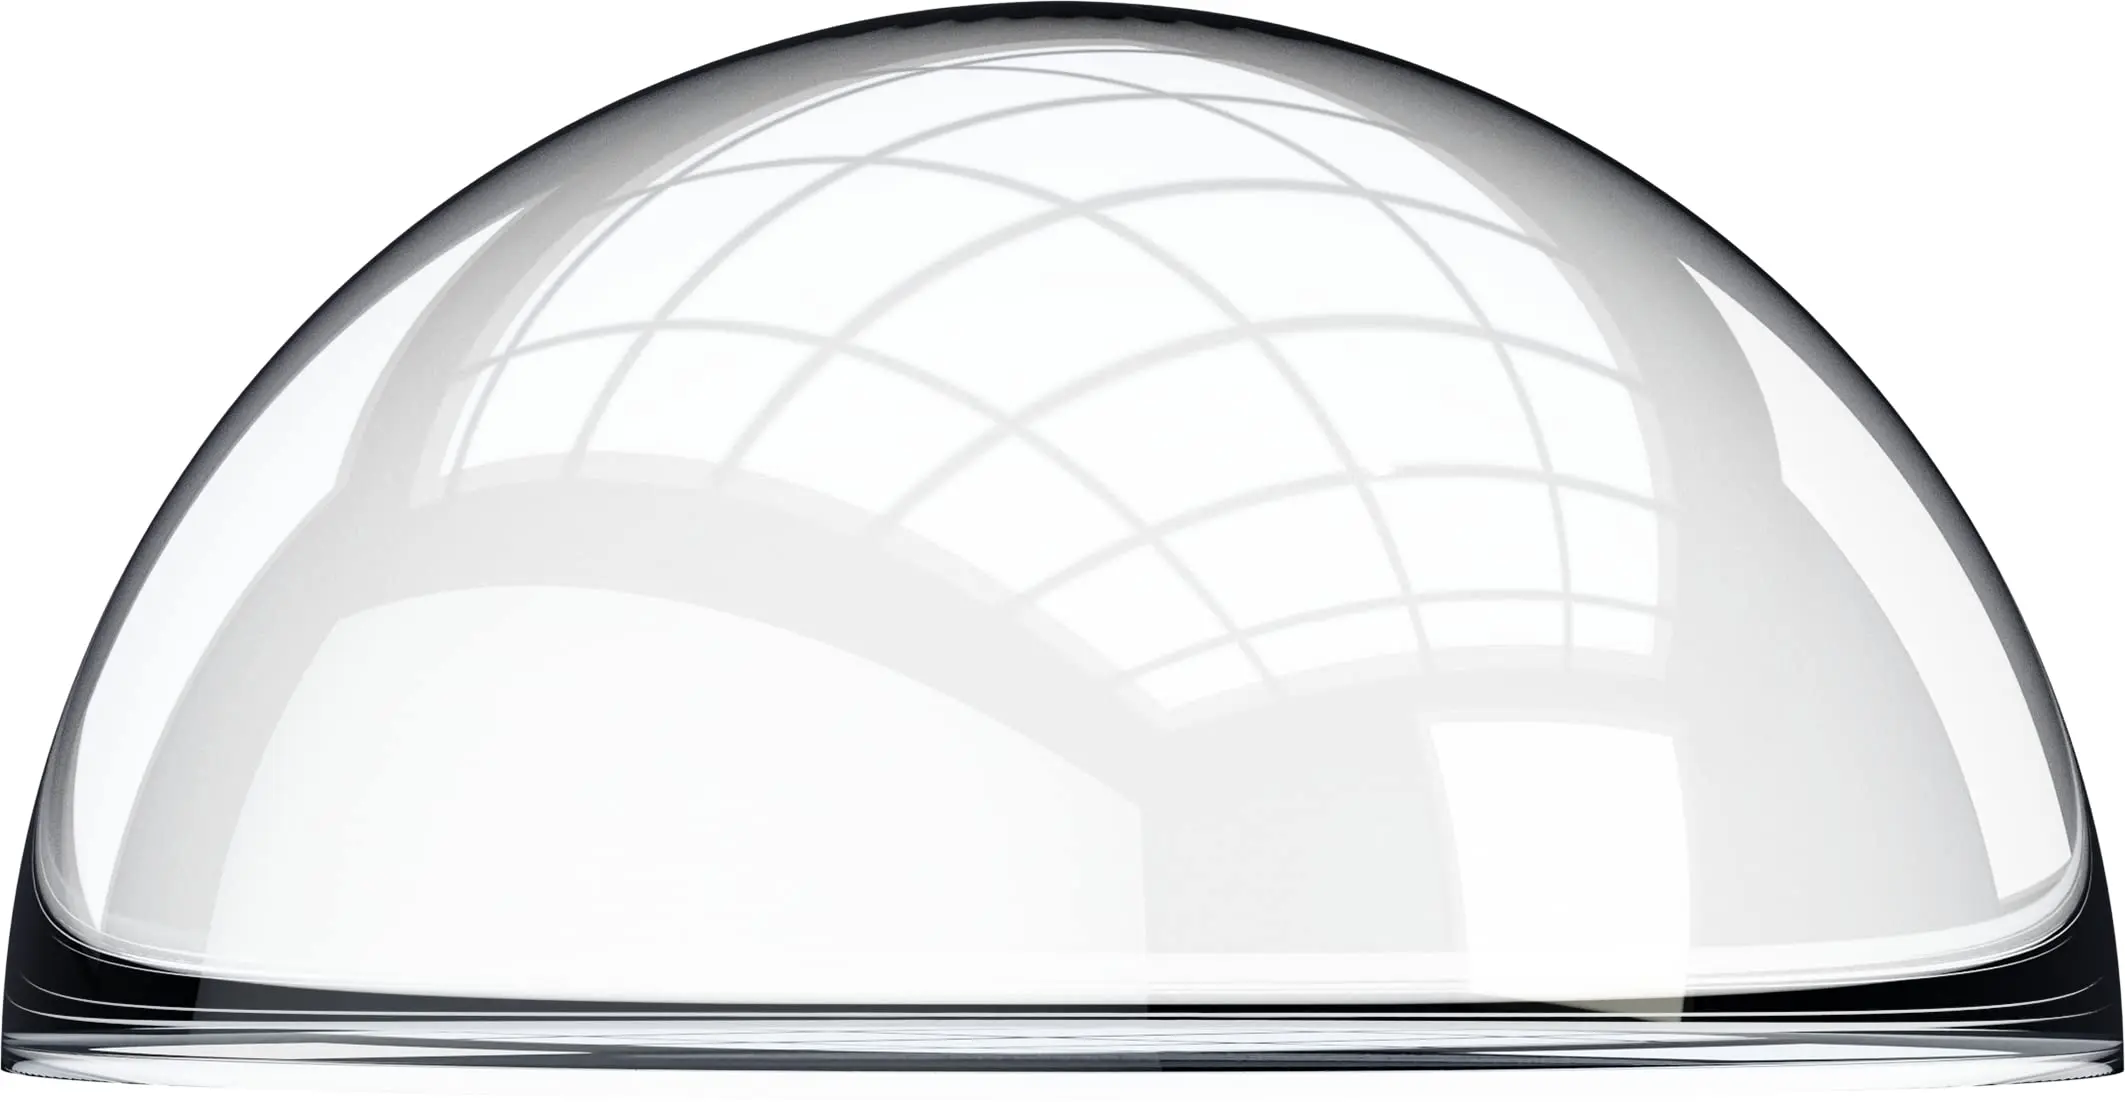 media esfera de plastico - Cómo se le llama a la mitad de la esfera